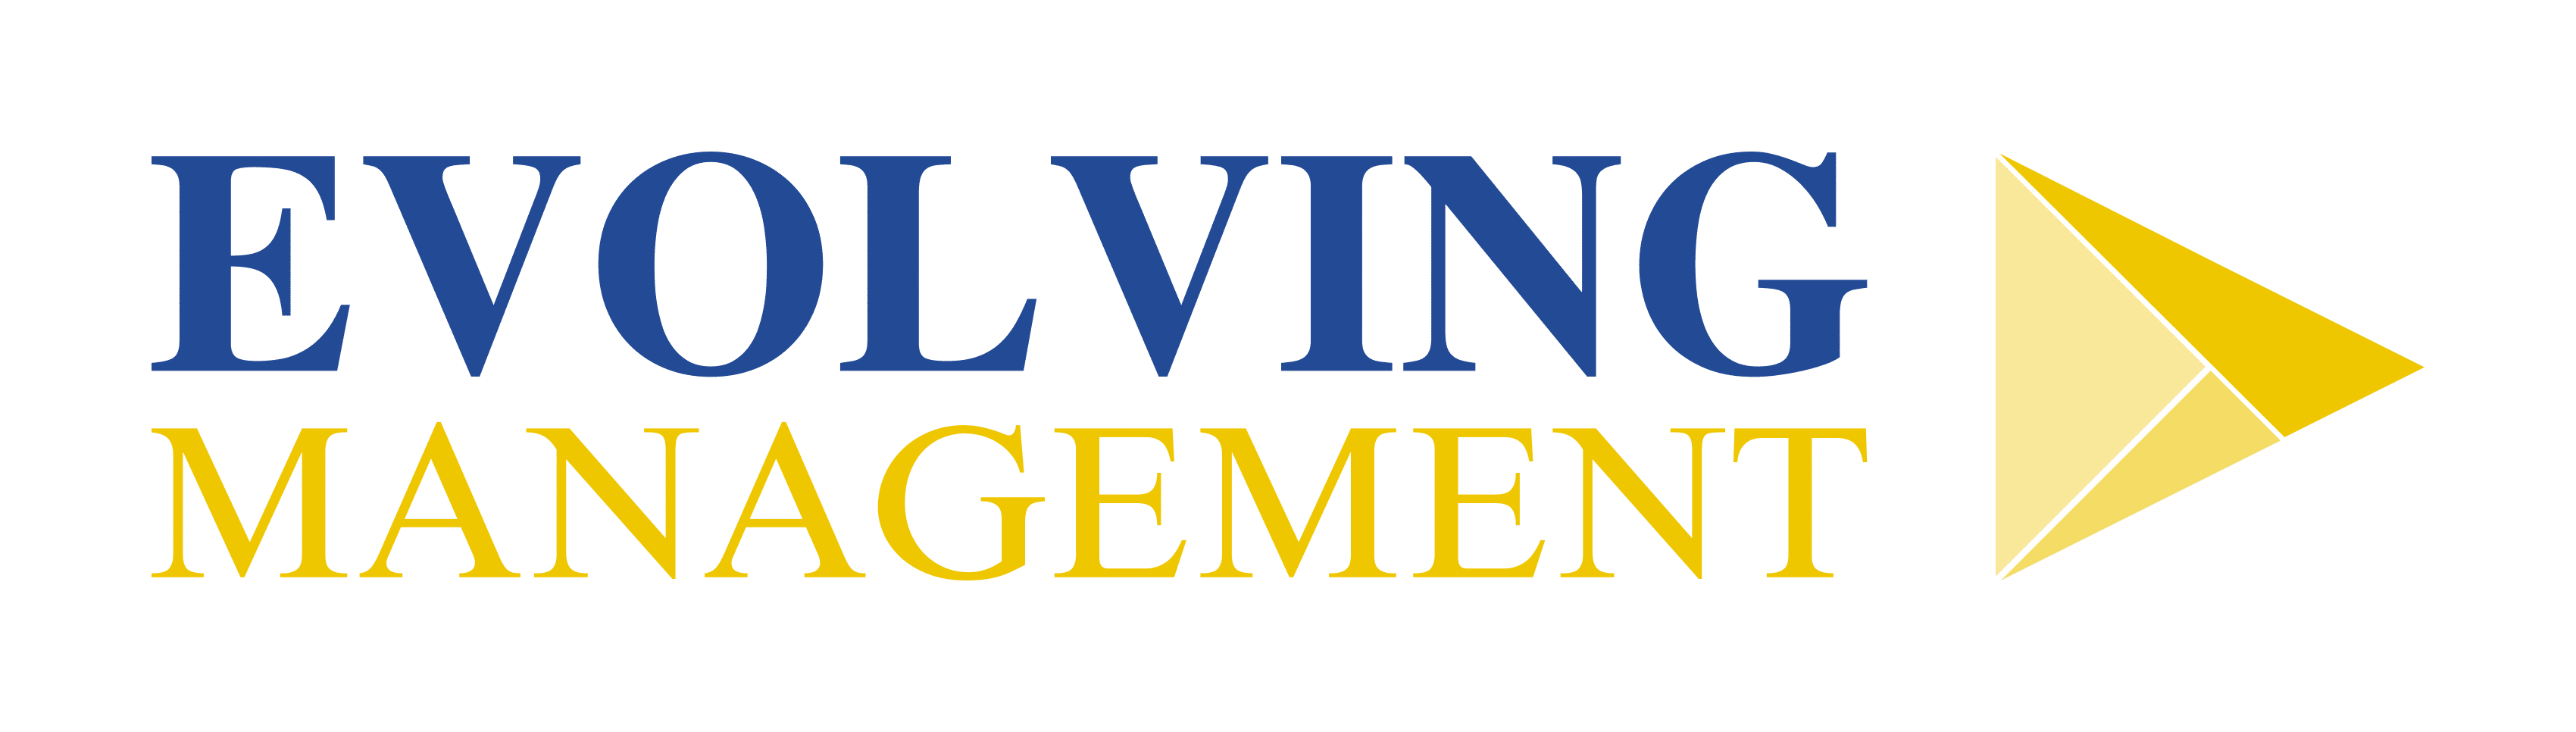 Evolving Management - large logo